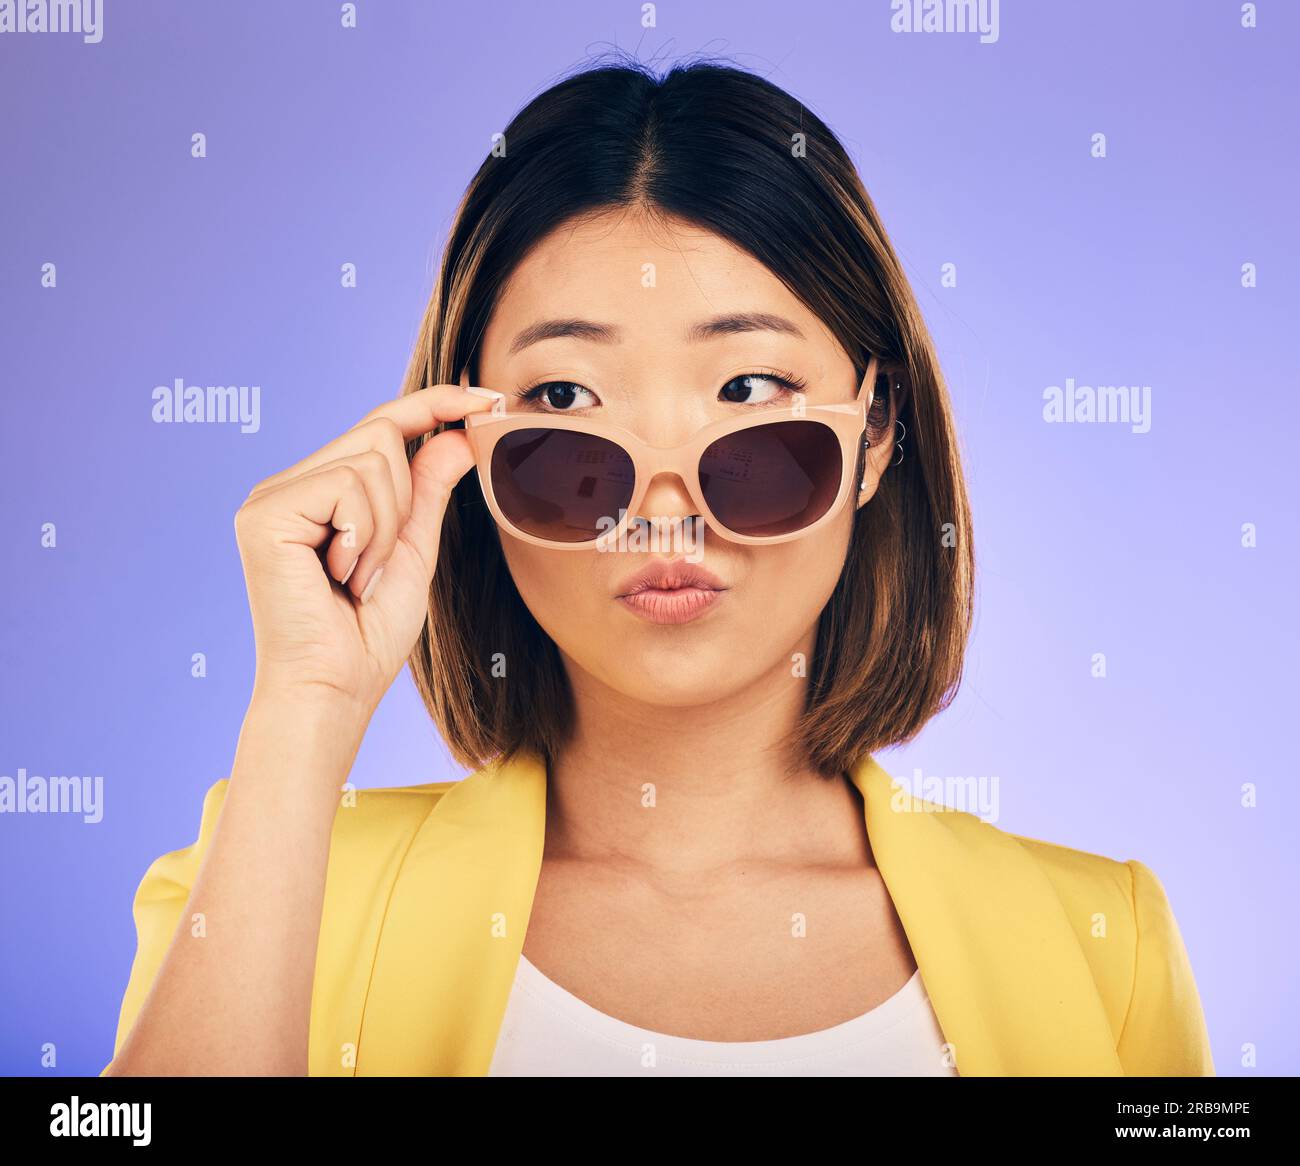 Mode, lunettes de soleil et un modèle asiatique femme sur un fond violet en studio pour un style tendance. Visage, nuances et attitude avec une jeune femme confiante Banque D'Images